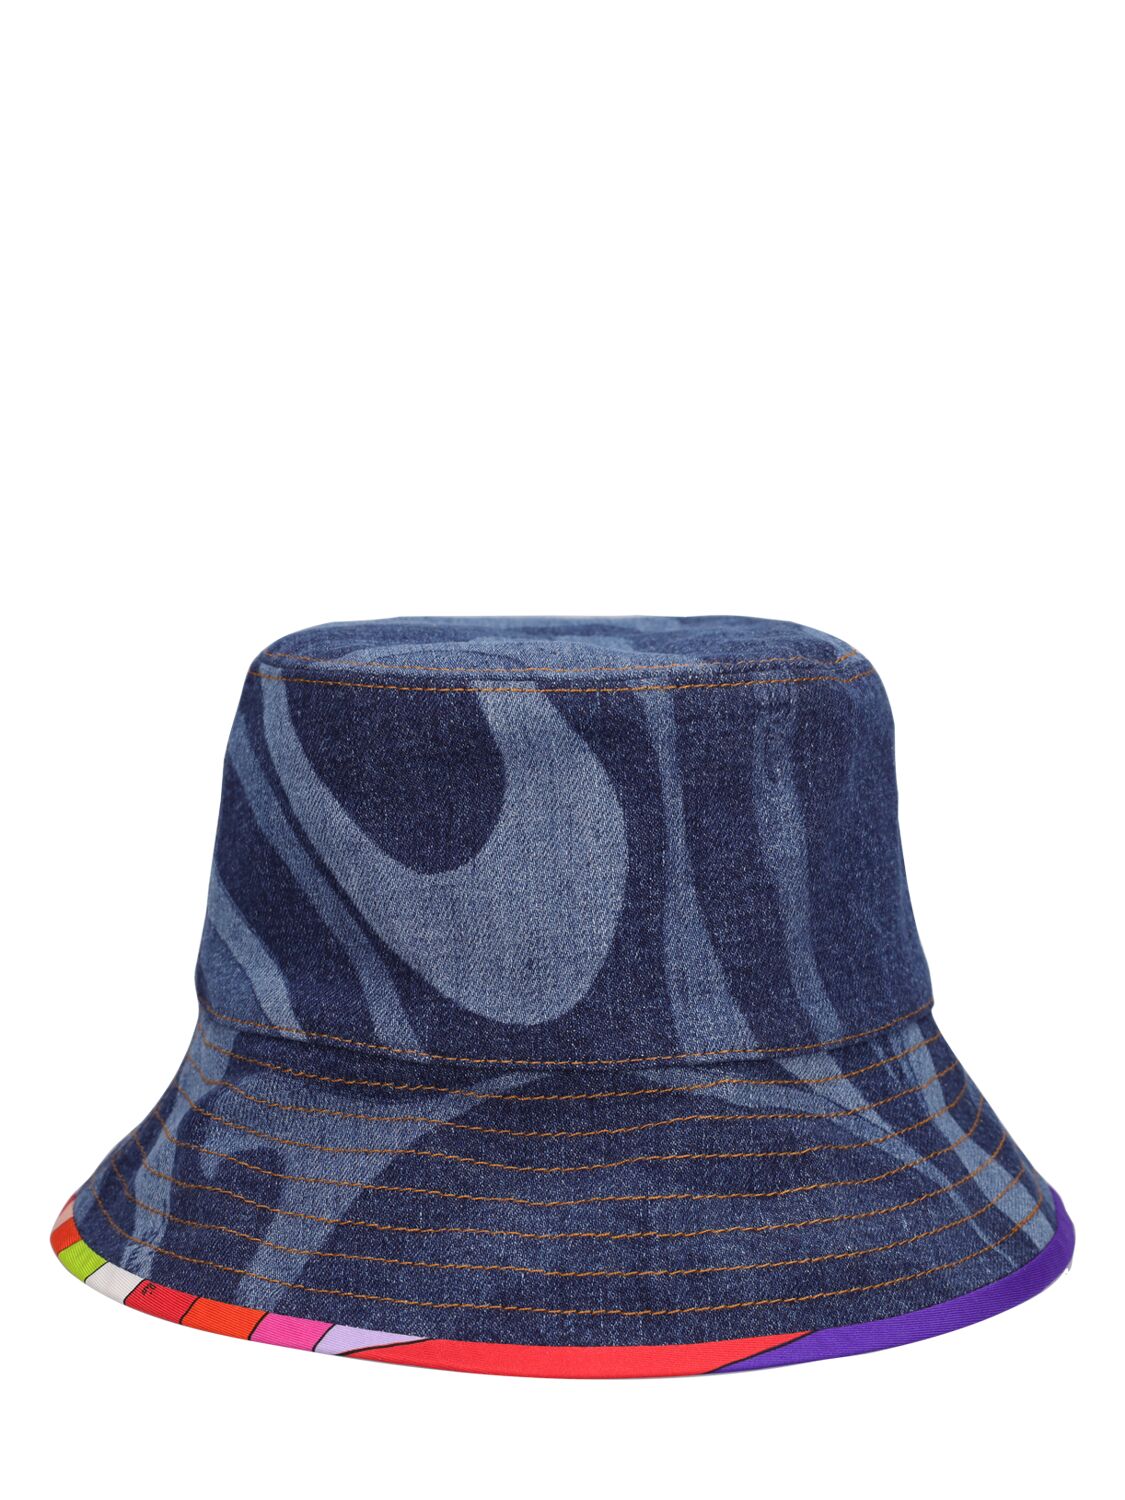 Image of Lasered Denim Bucket Hat